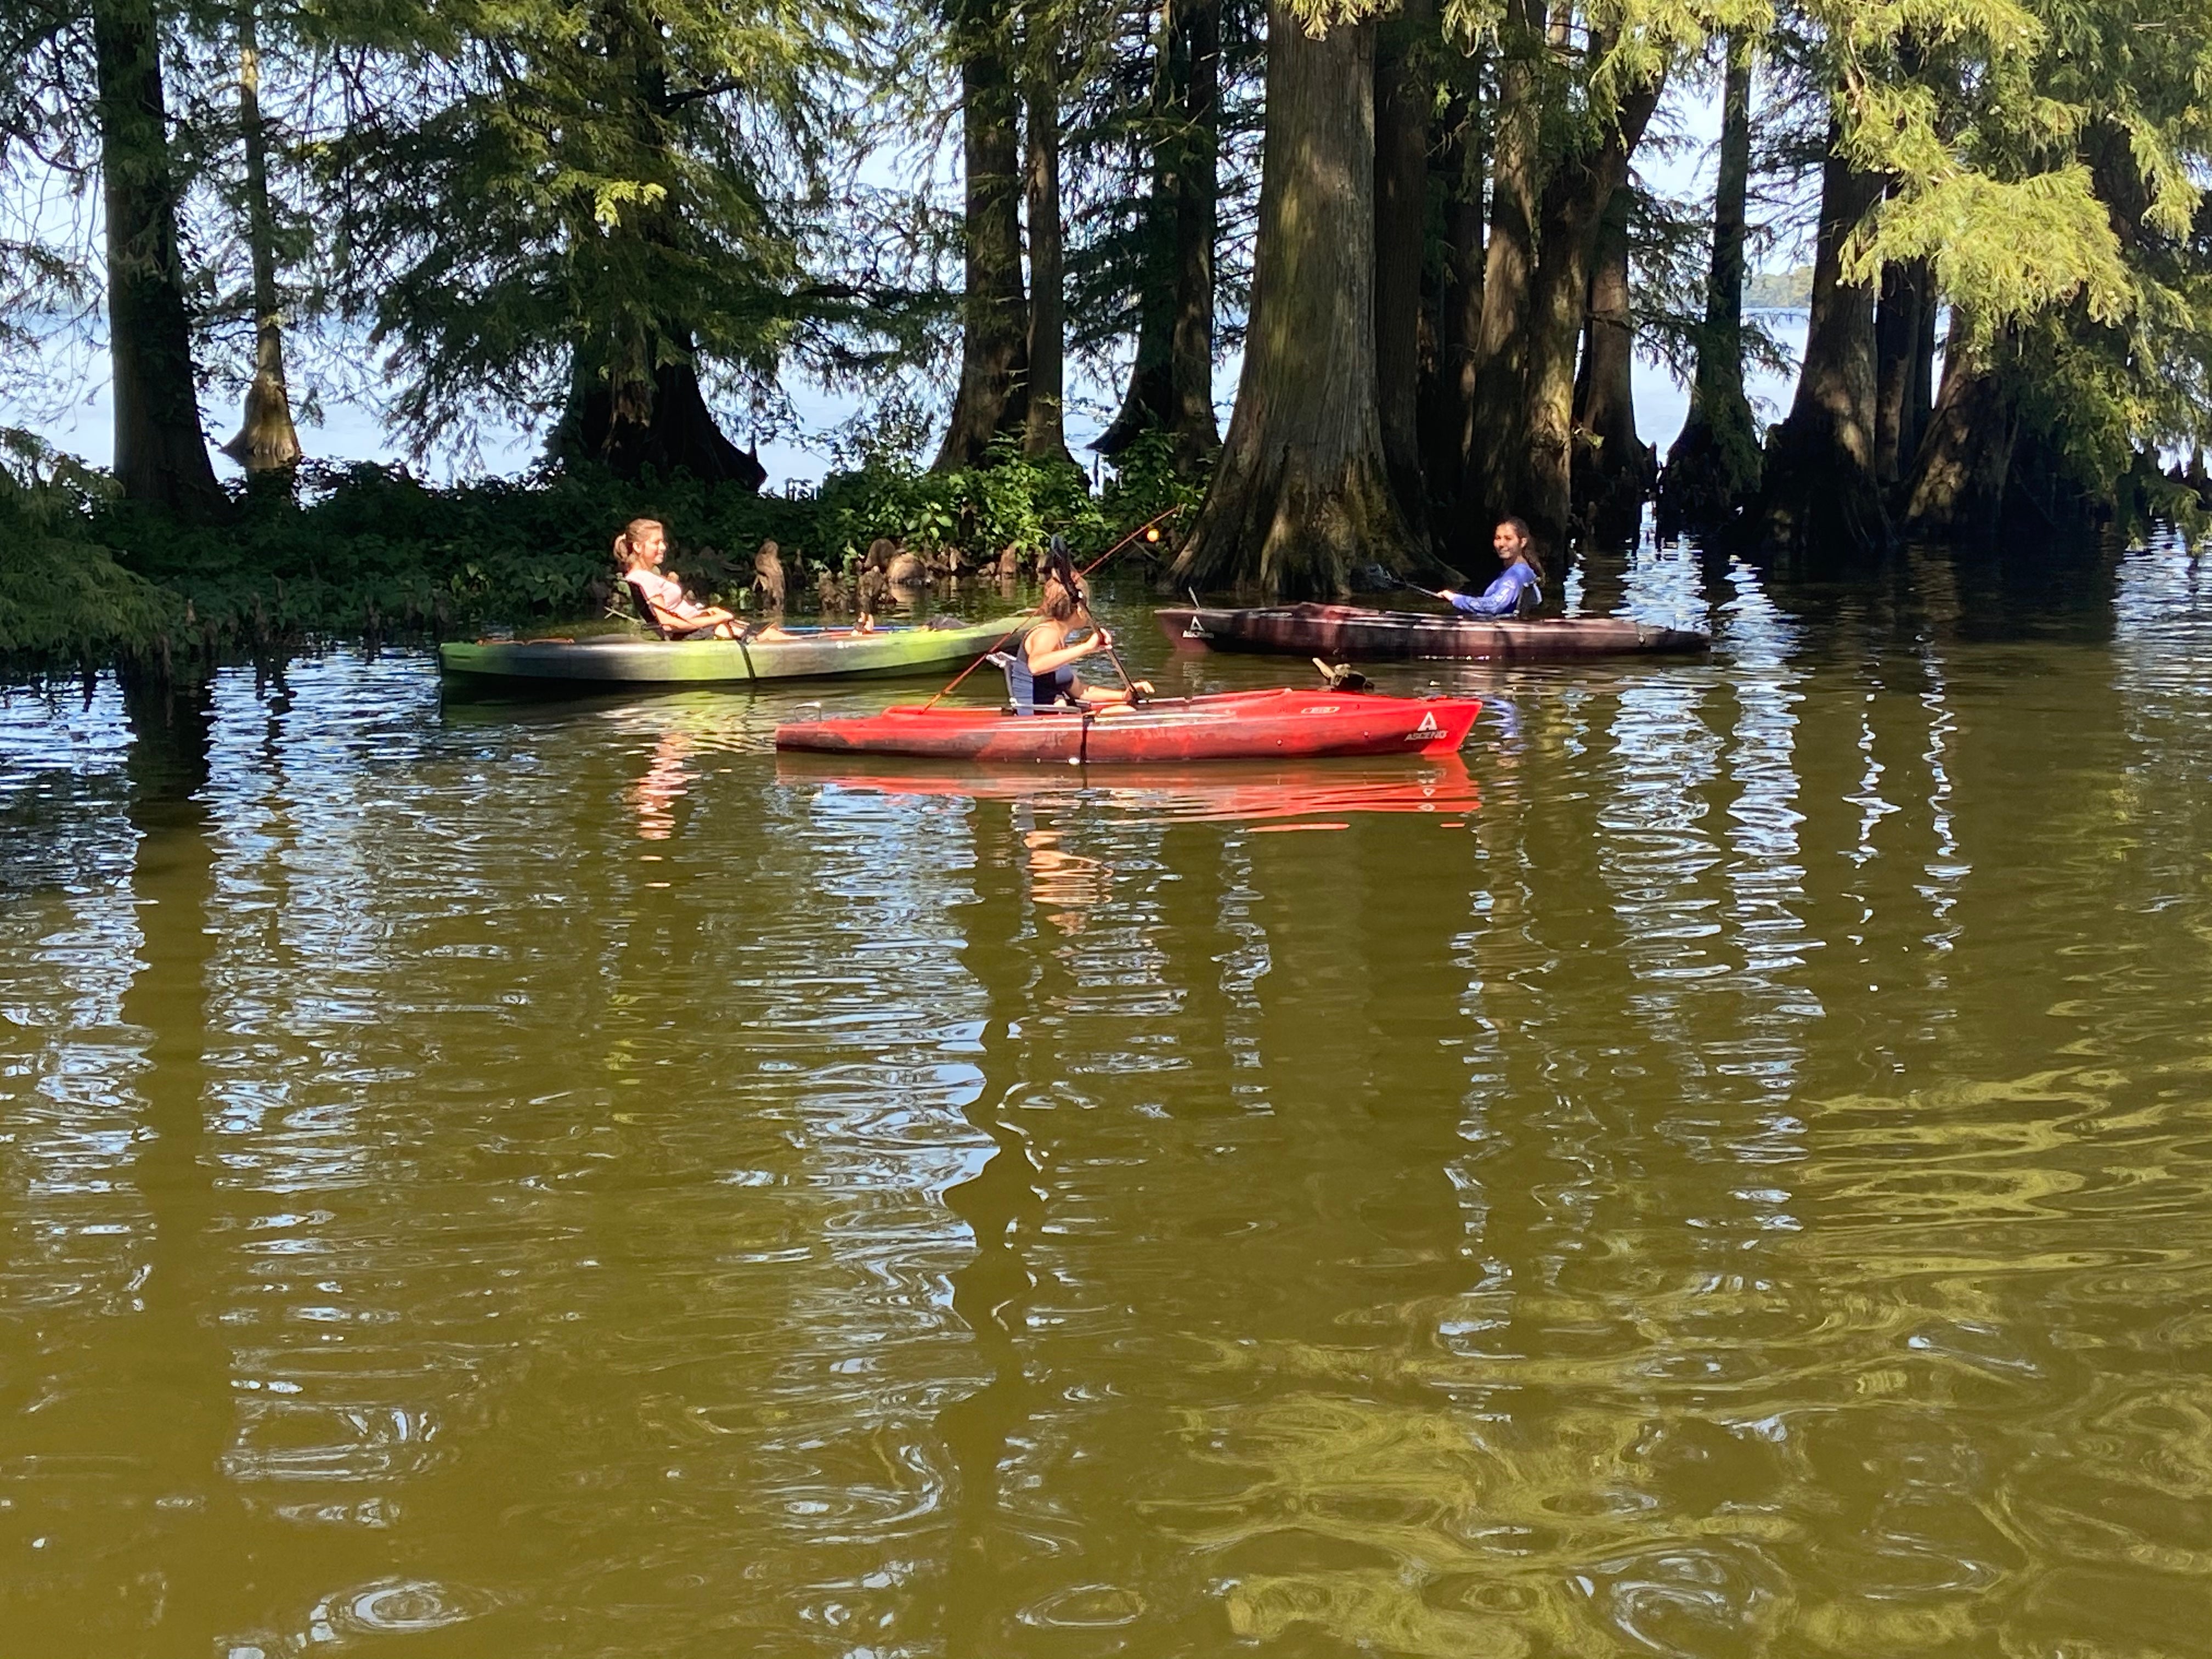 Kayak rental was $8 an hour, teens loved it!